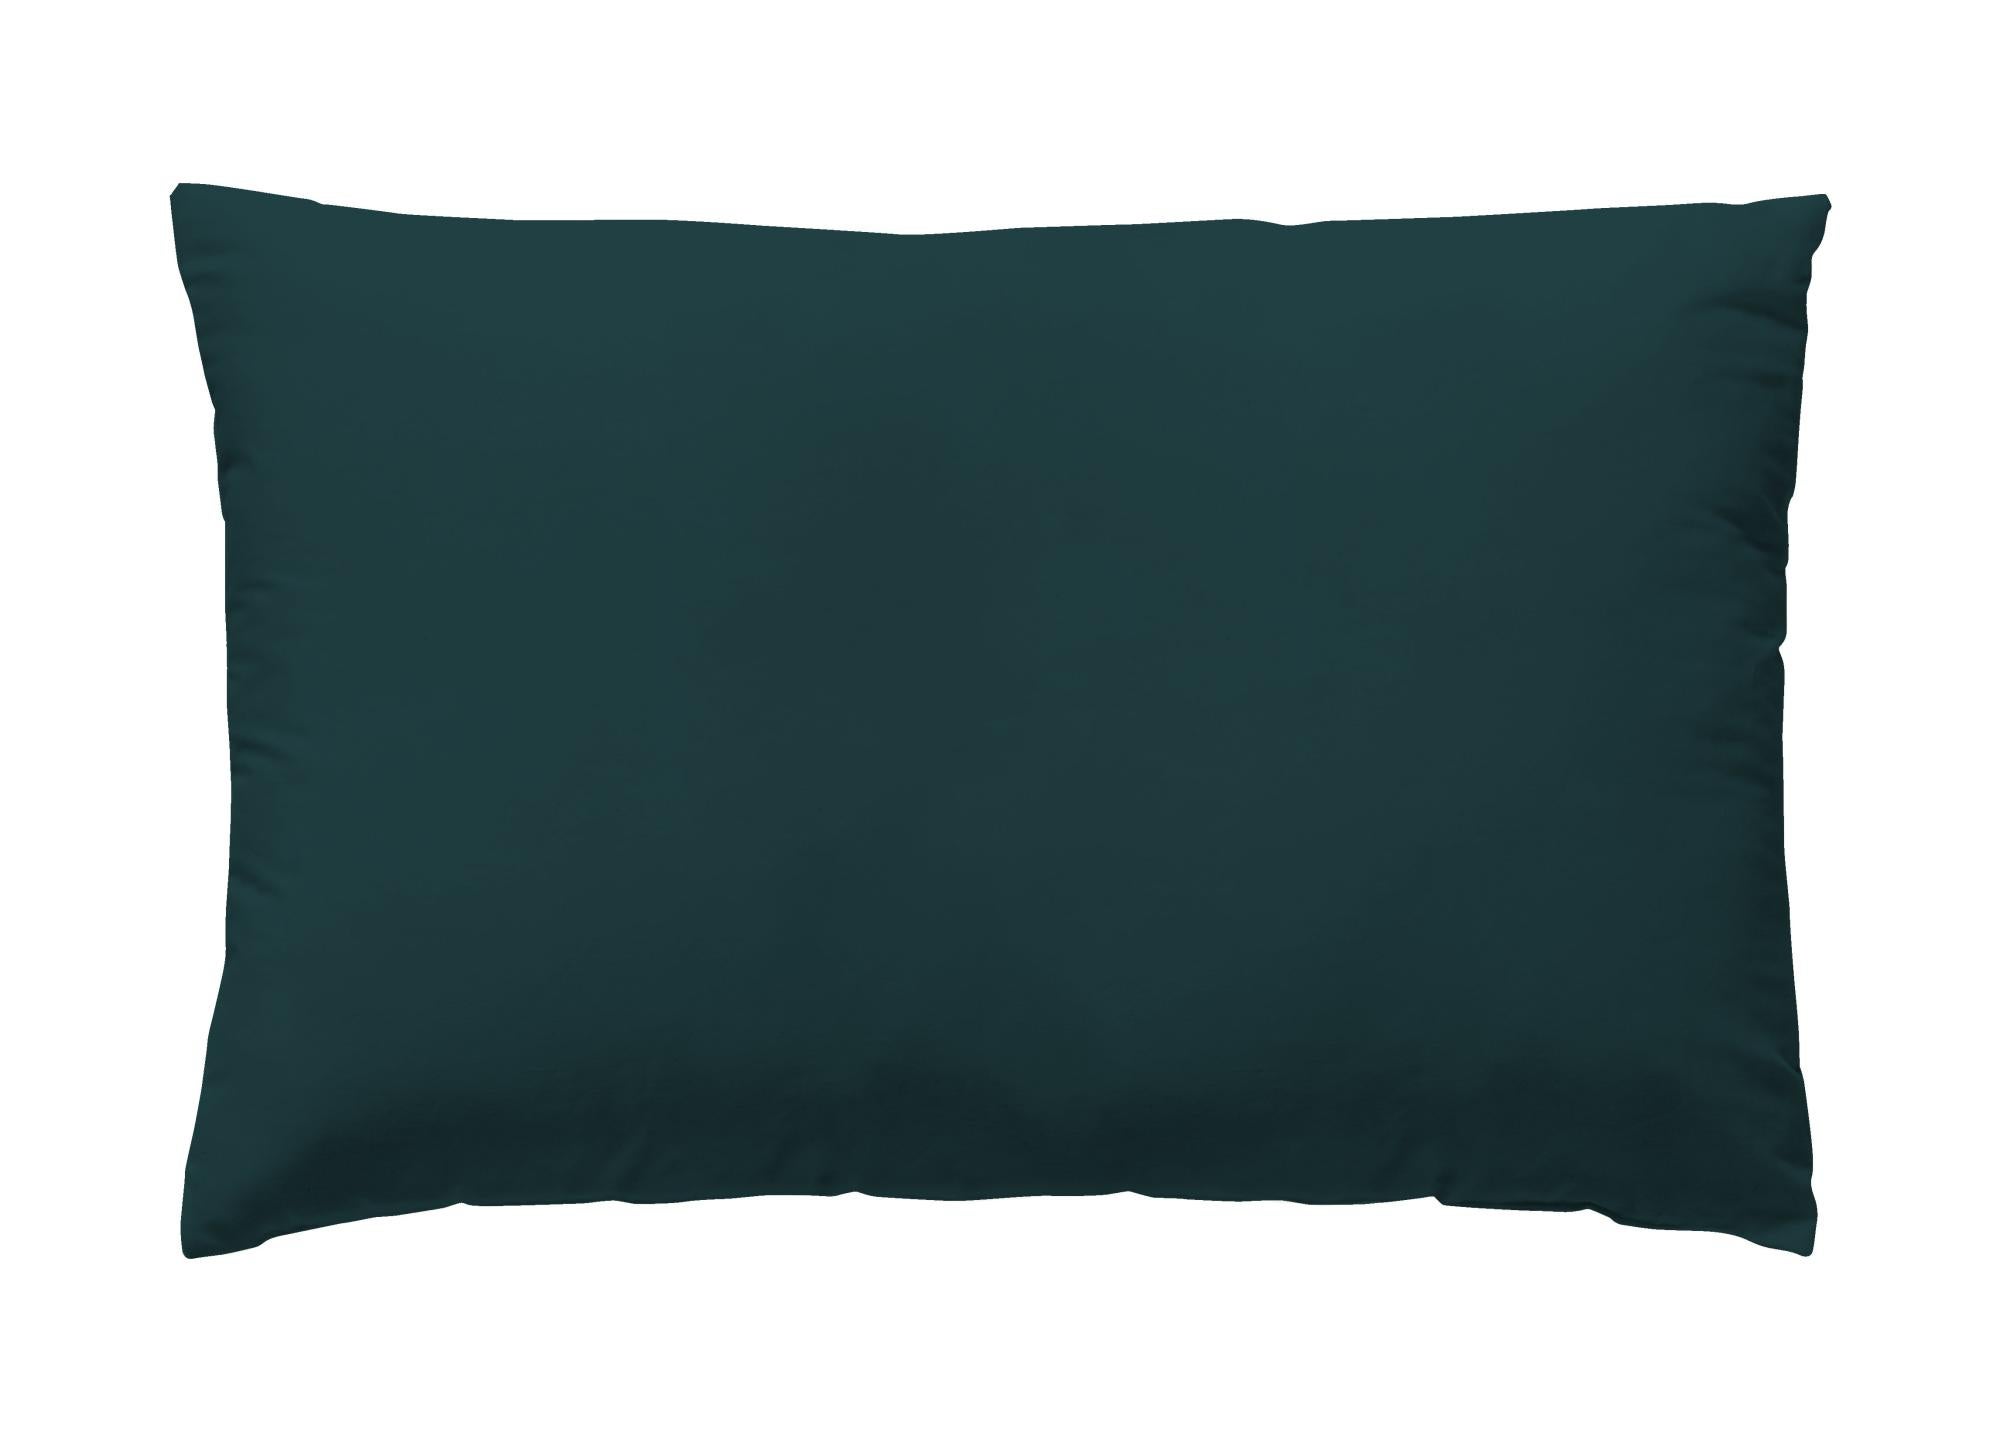 Funda de almohada wash garment algodón 200 hilos verde teal 50 x 75 cm